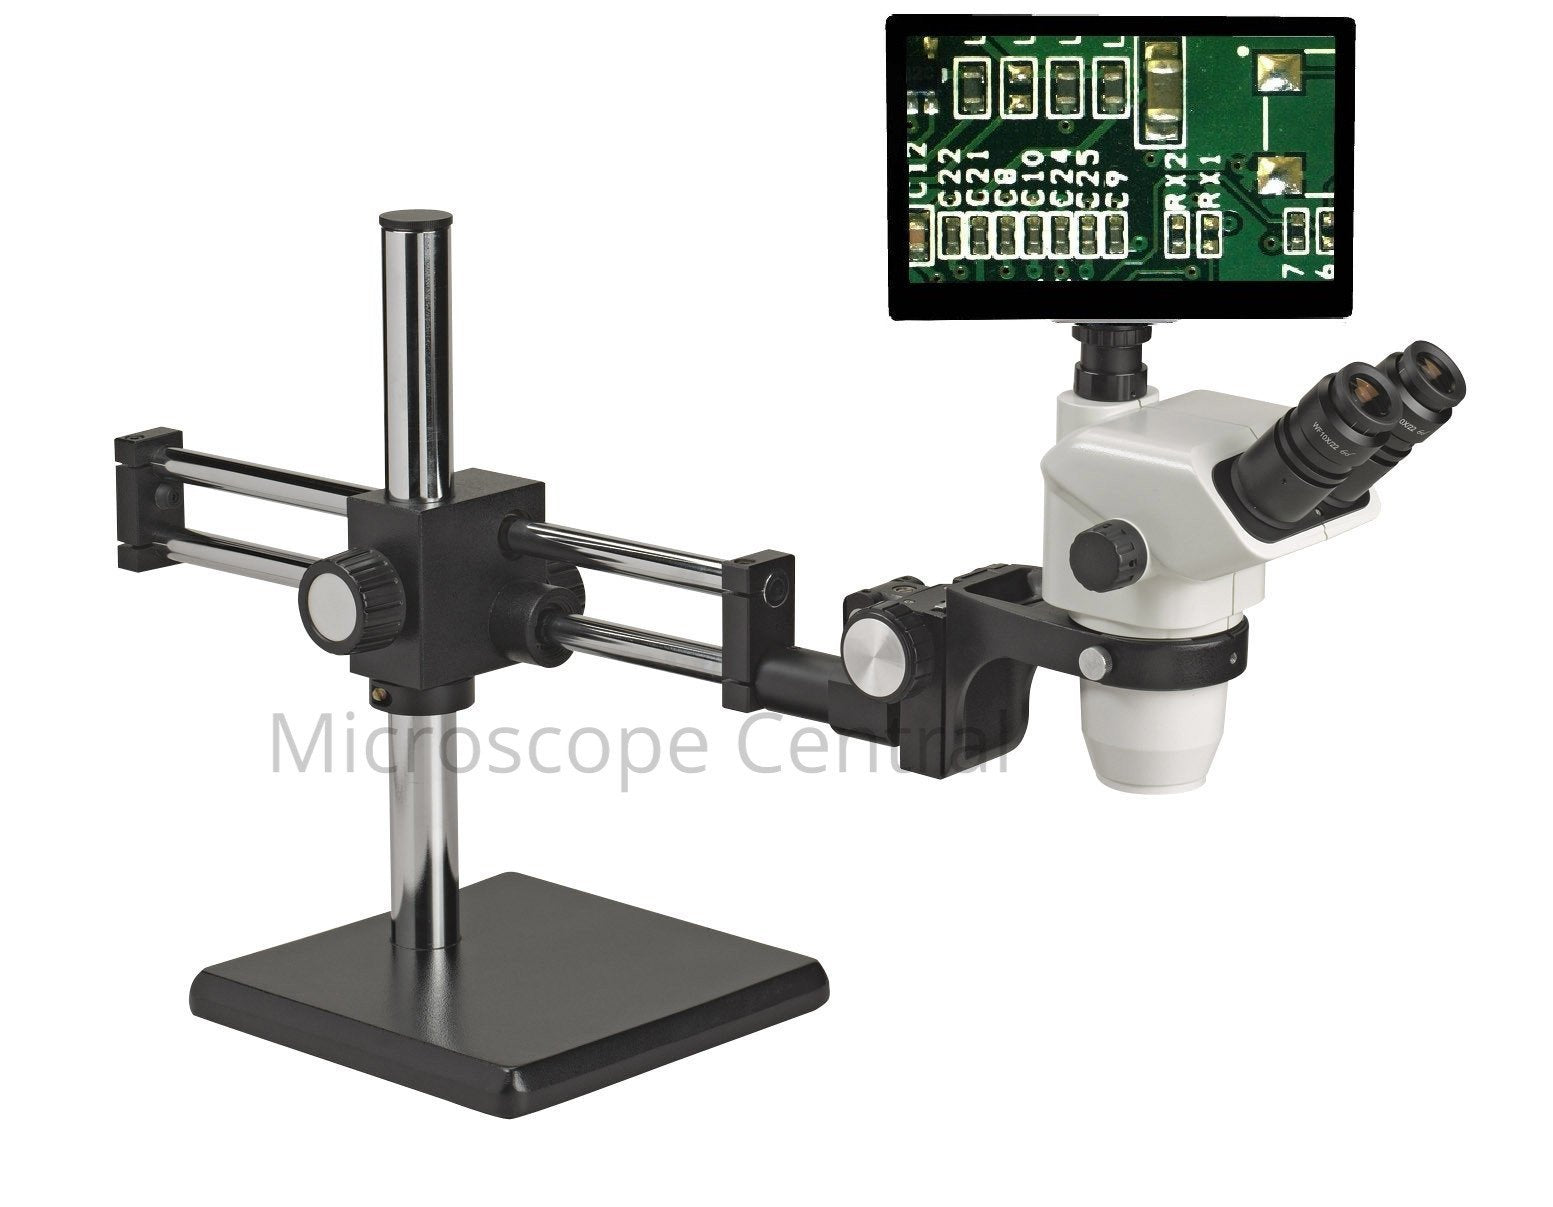 Accu-Scope 3076 Boom Stand Digital Microscope 0.67x - 4.5x